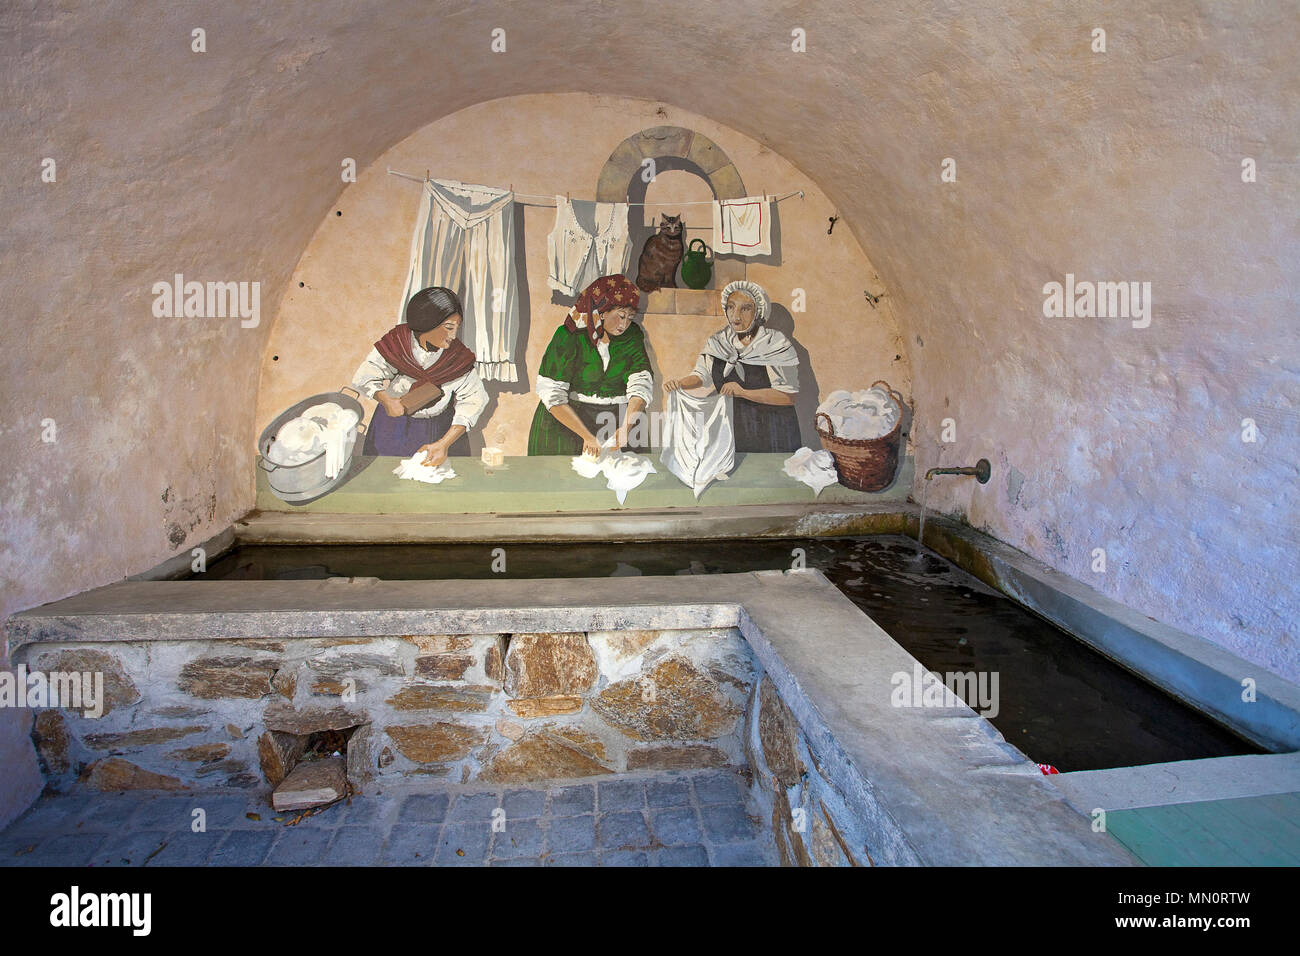 Old historic public laundry place at village Ramatuelle, Cote d'Azur,  Département Var, Provence-Alpes-Côte d'Azur, South France, France, Europe  Stock Photo - Alamy